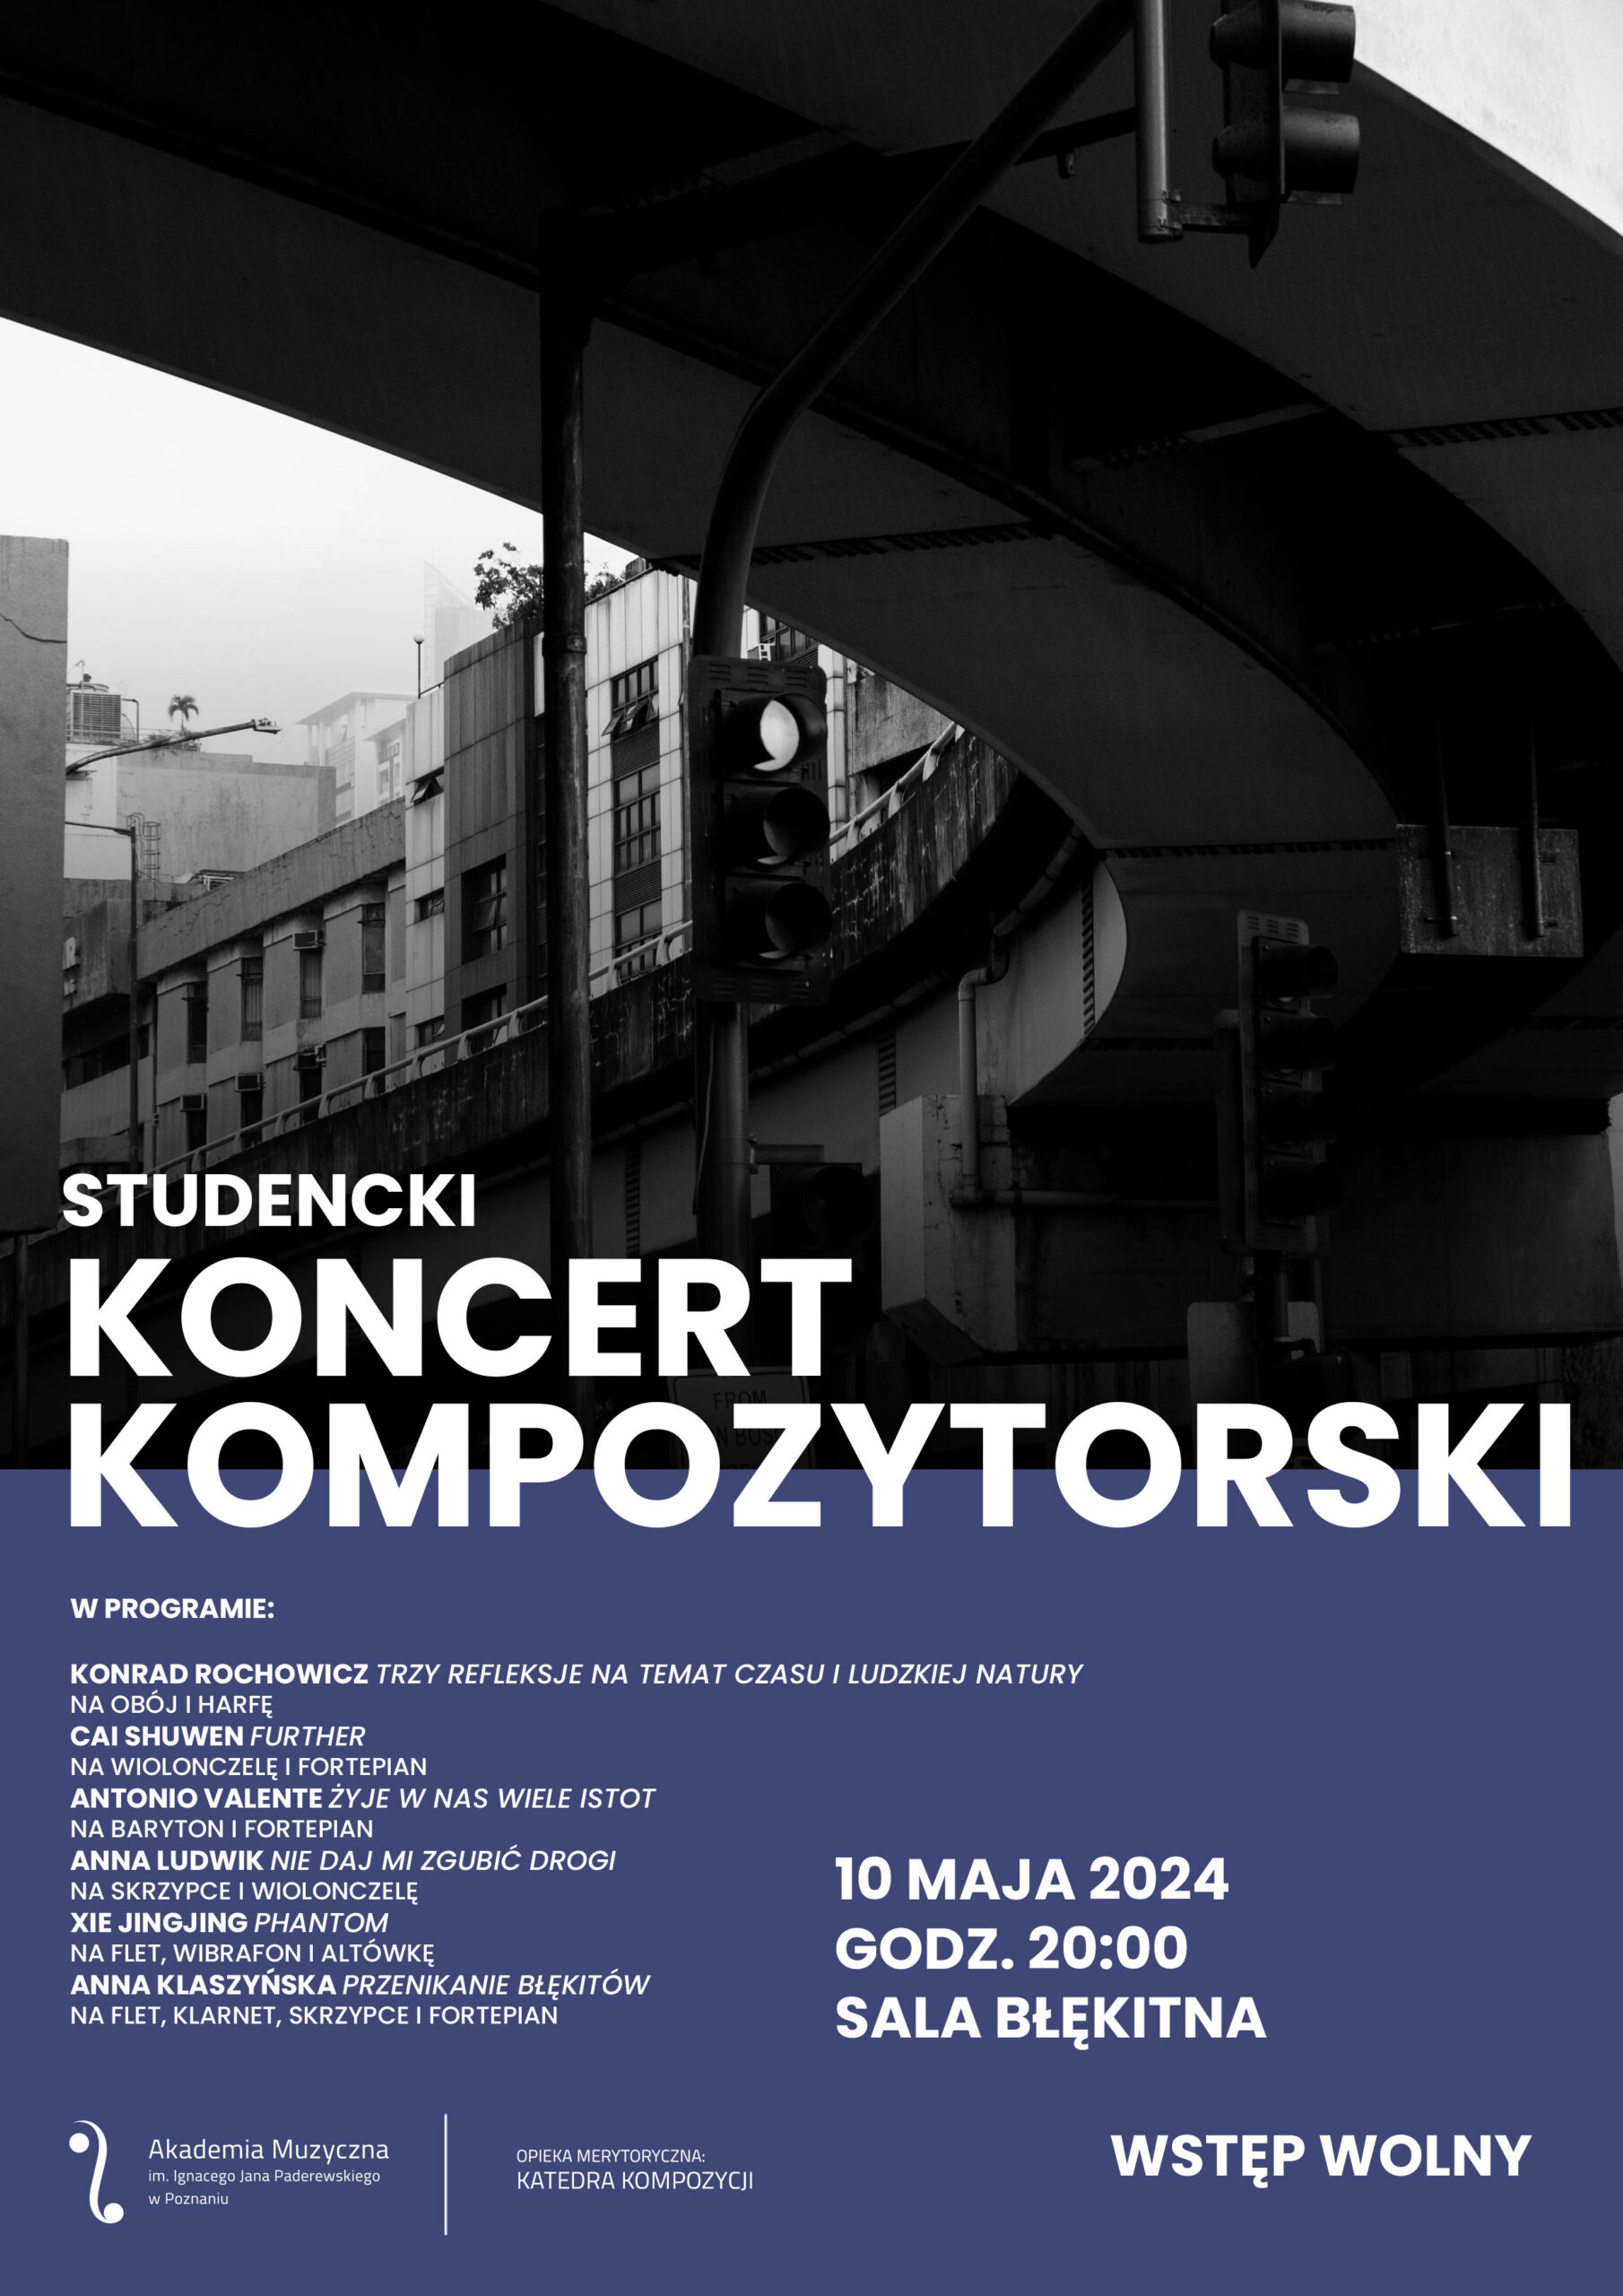 Plakat zawiera informacje na temat koncertu kompozytorskiego w wykonaniu studentów Akademii w dniu 10 maja 2024